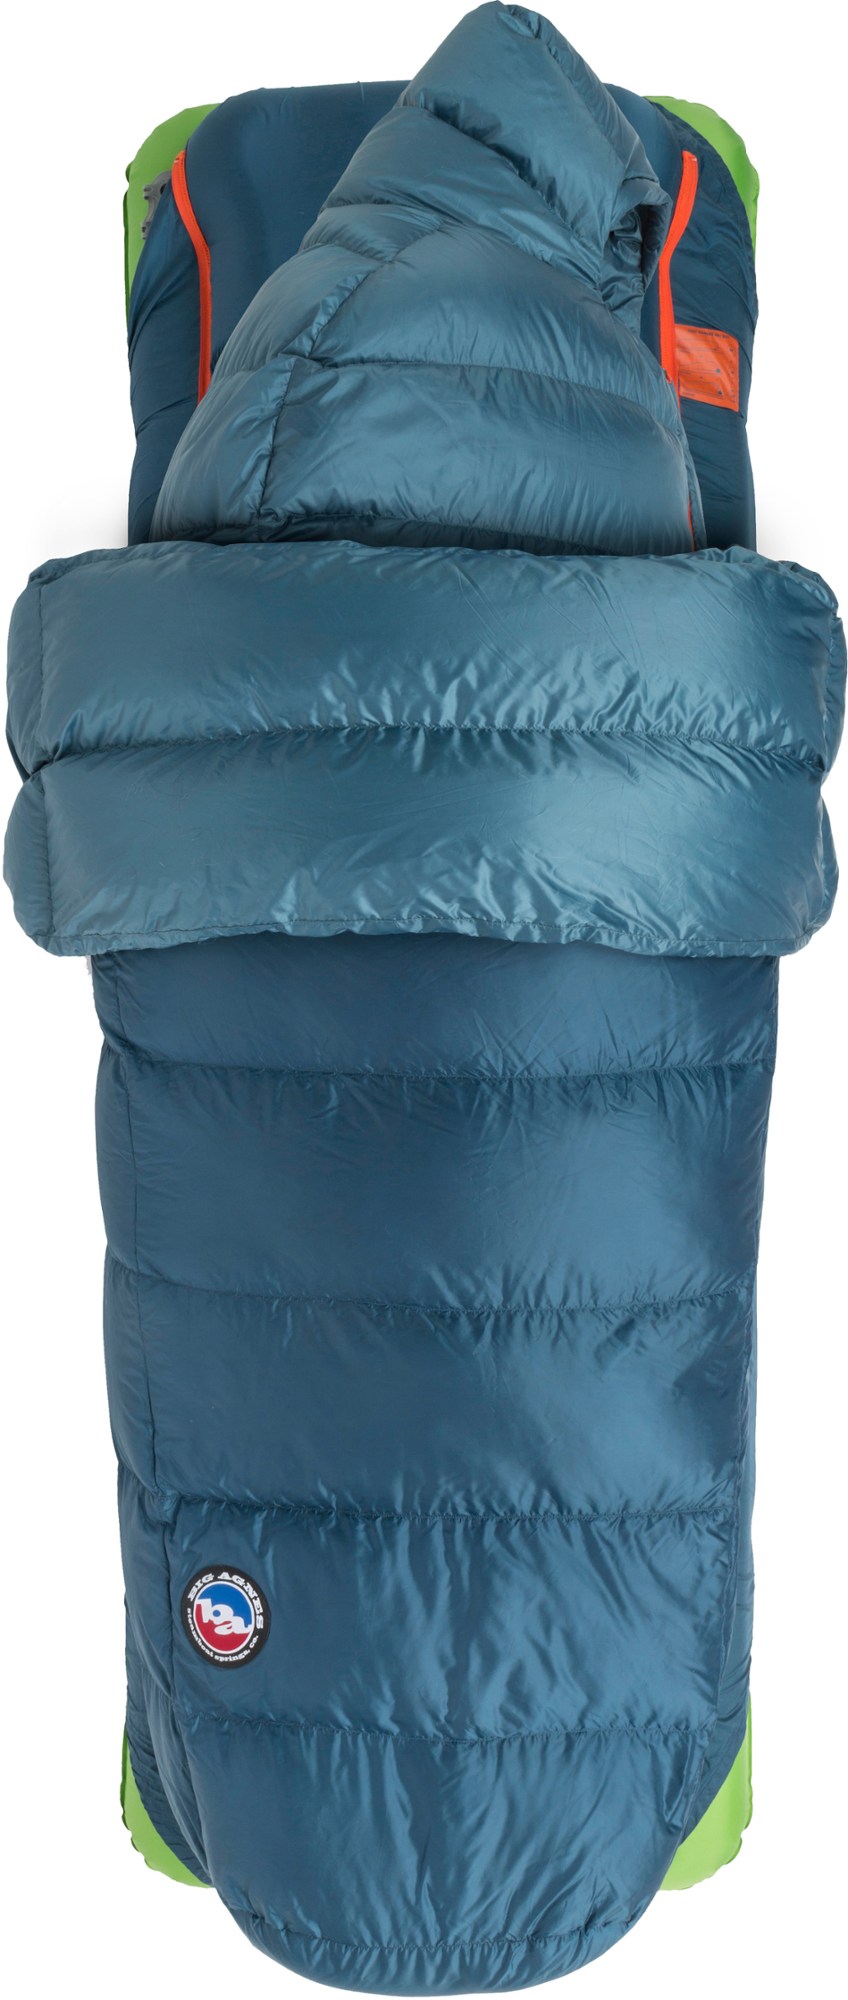 Спальный мешок Lost Ranger 3N1 15 - мужской Big Agnes, синий